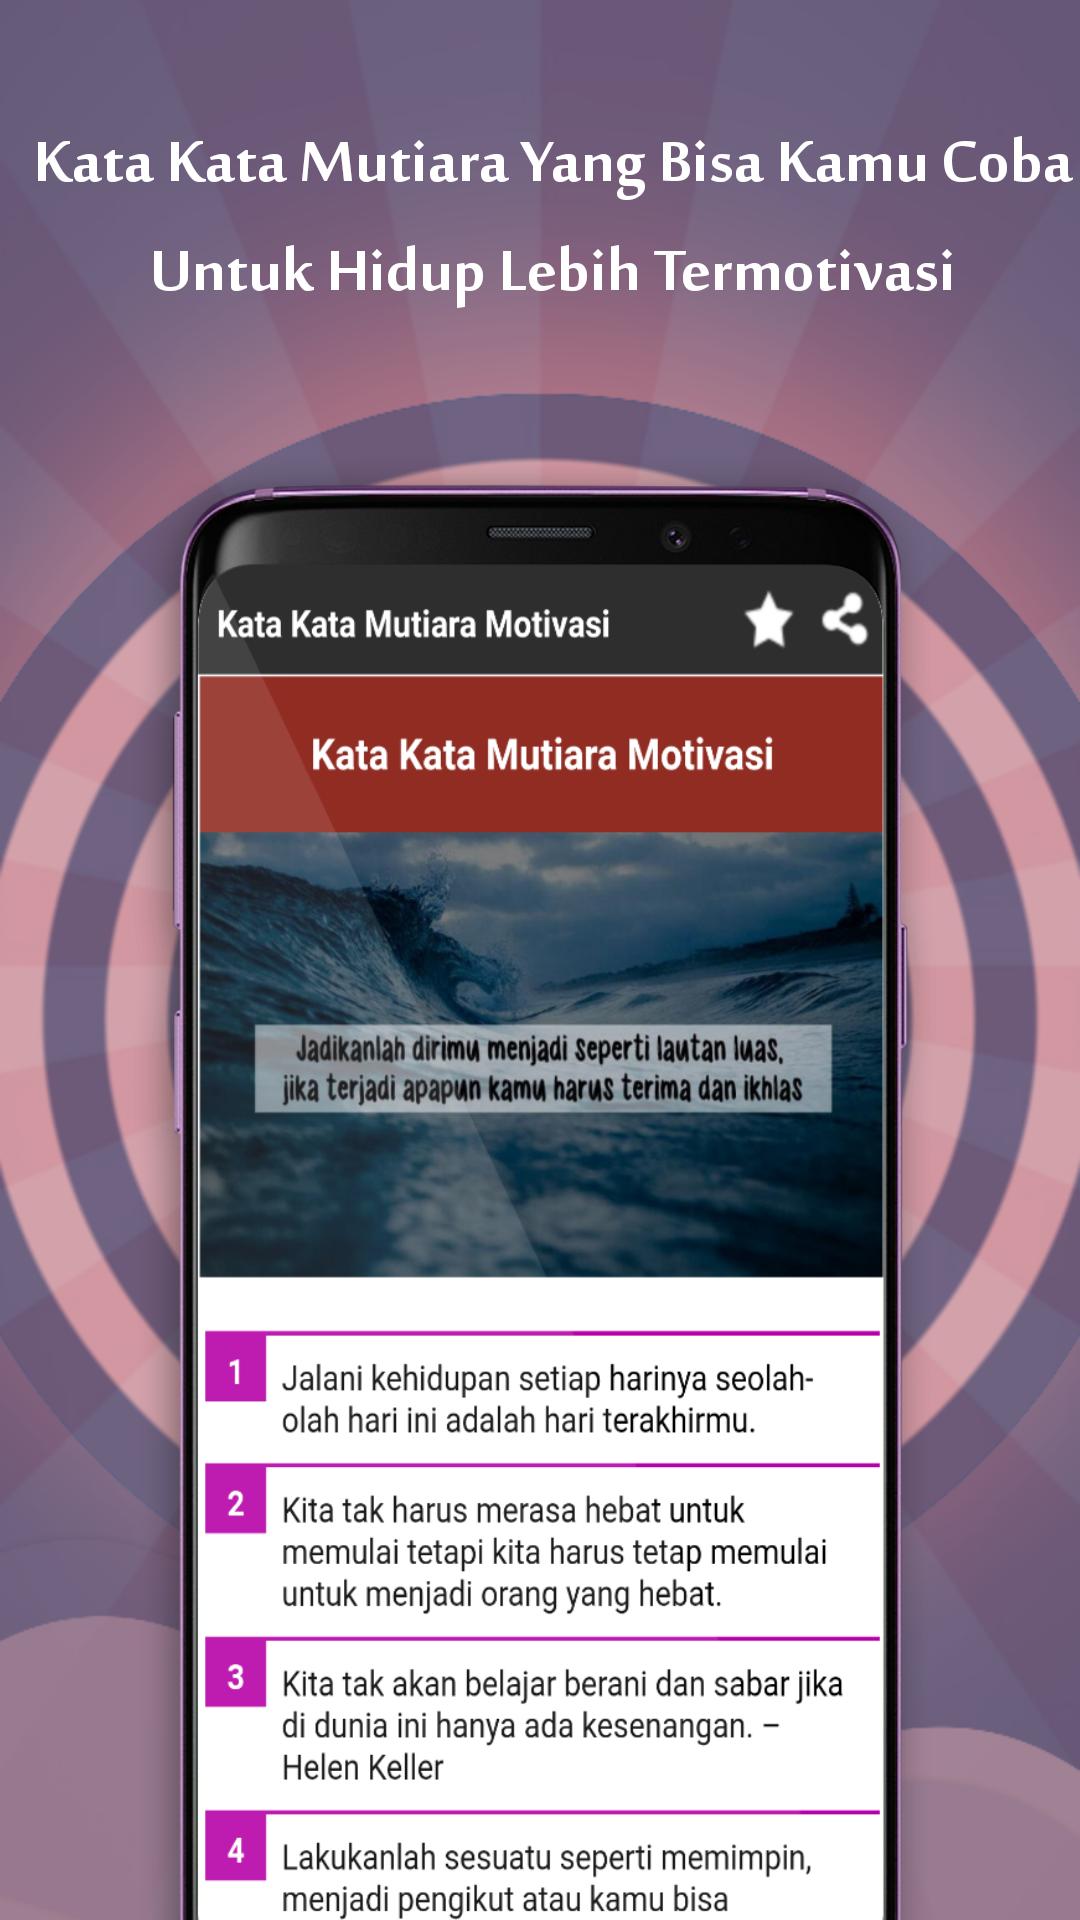 Kata Kata Mutiara Terbaik 2020 For Android Apk Download